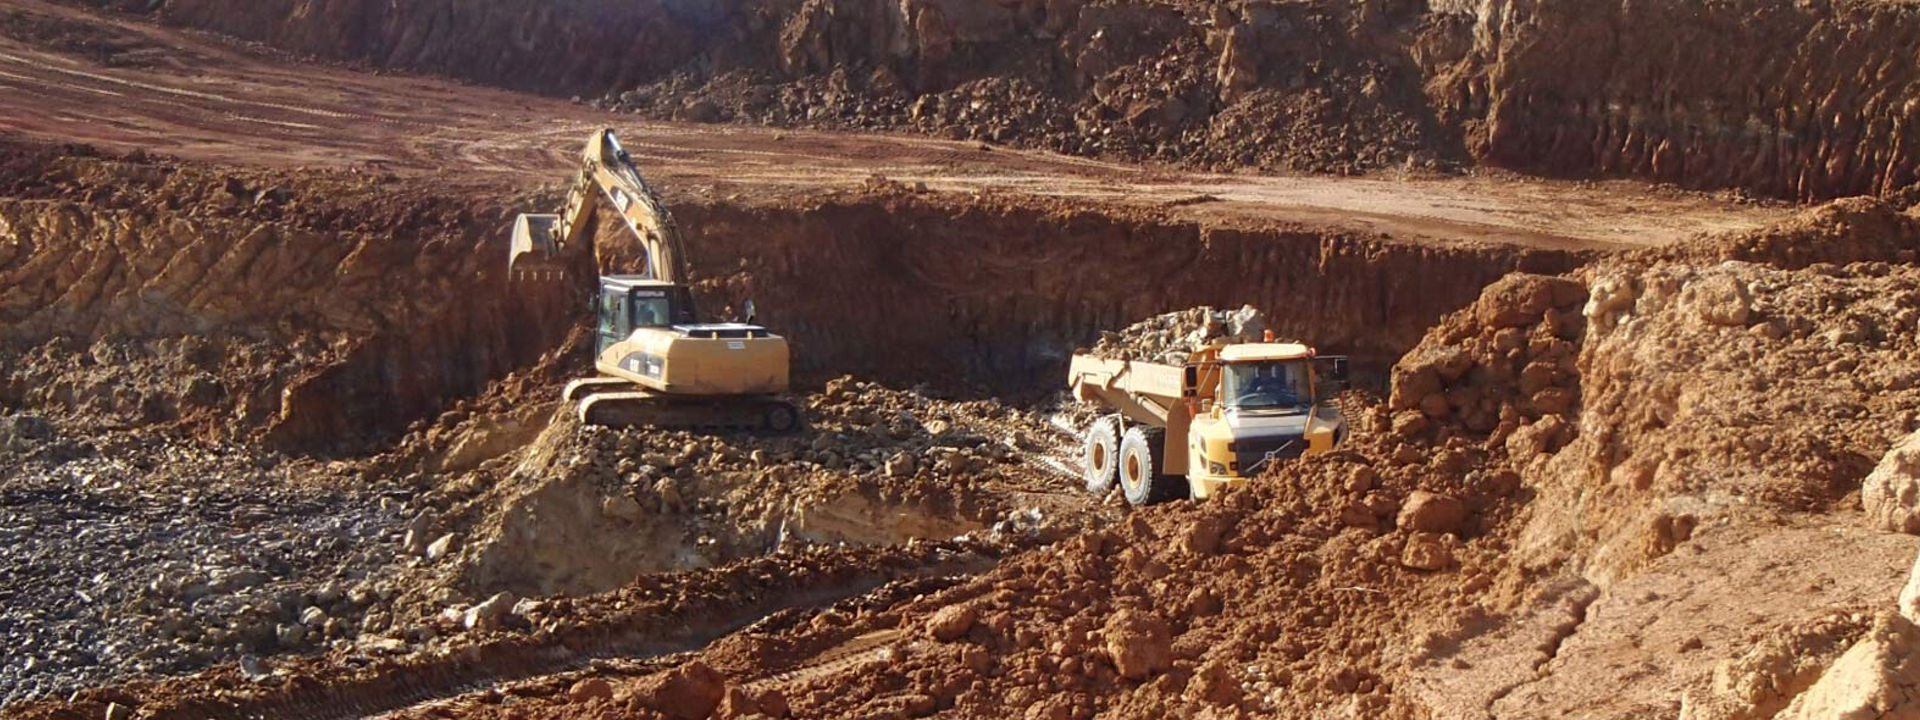 En ledd lastebil utstyrt med Bridgestone terrengdekk som arbeider i et stort steinbrudd